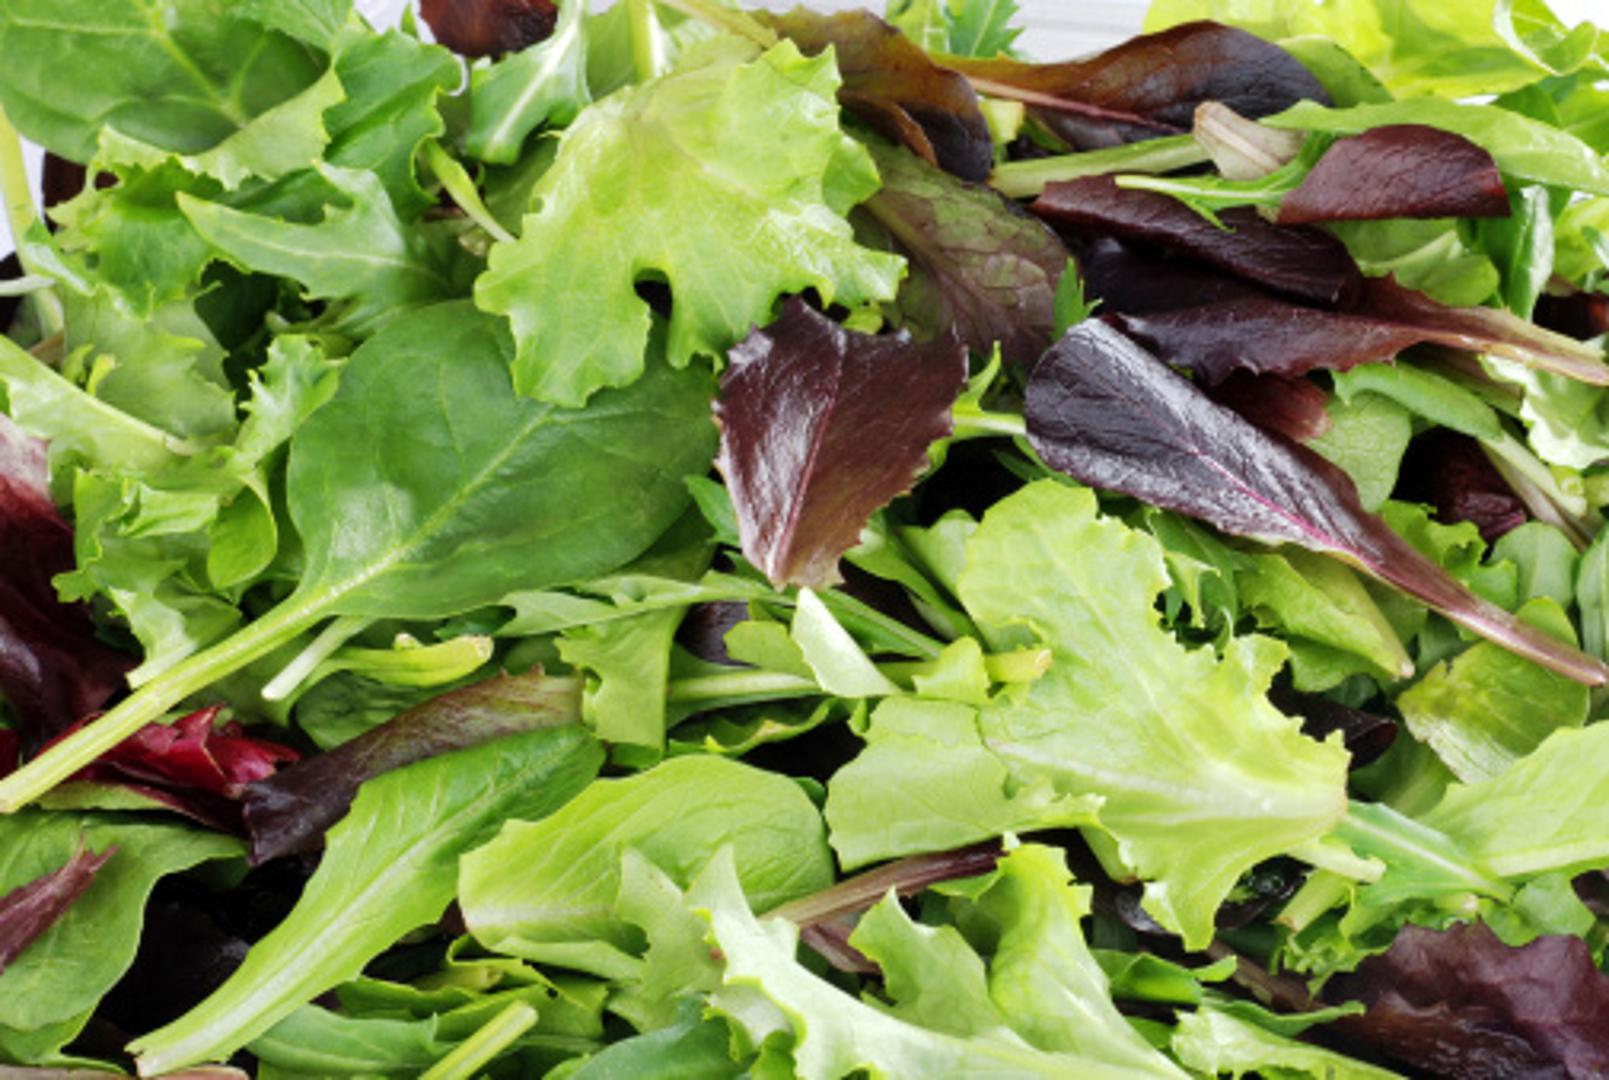 Zelena salata vrlo lagano i vrlo brzo može propasti, ako se krivo spremi u hladnjak, ali zato je važno obratiti pozornost na sve.
